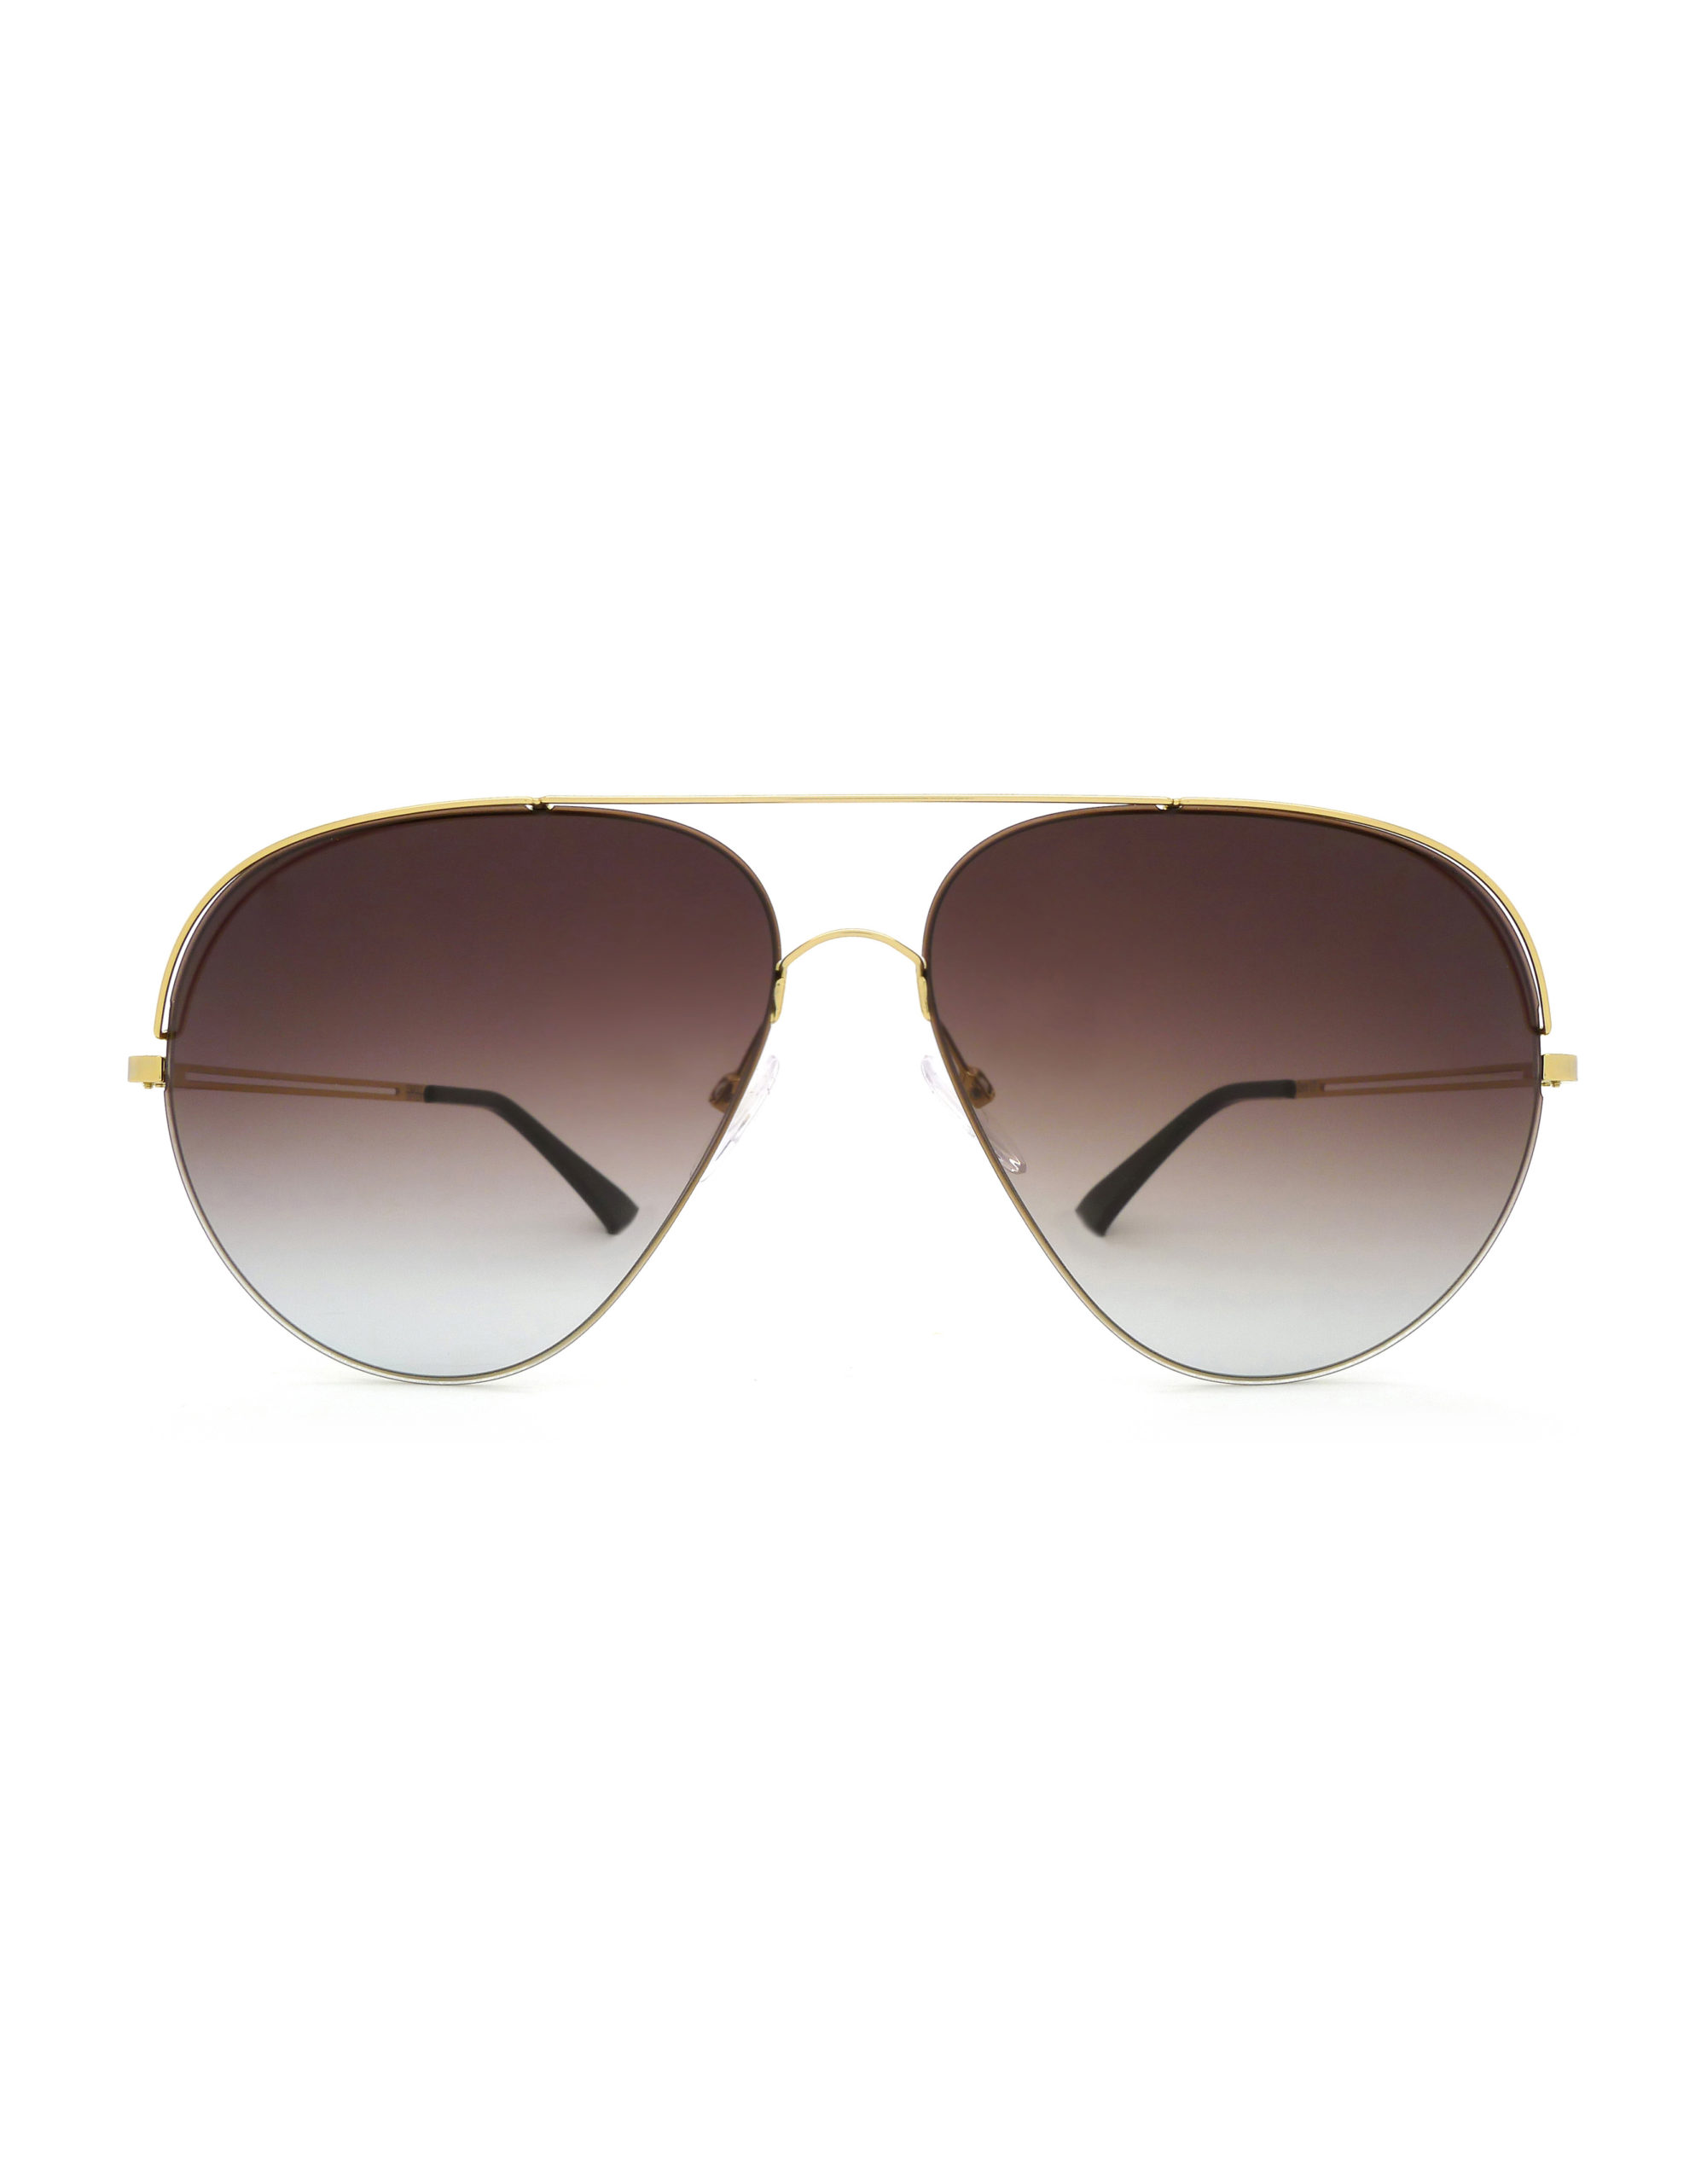 ZERO 17 Grad Brown - Luxury Sunglasses, Designer Sunglasses | Finest Seven